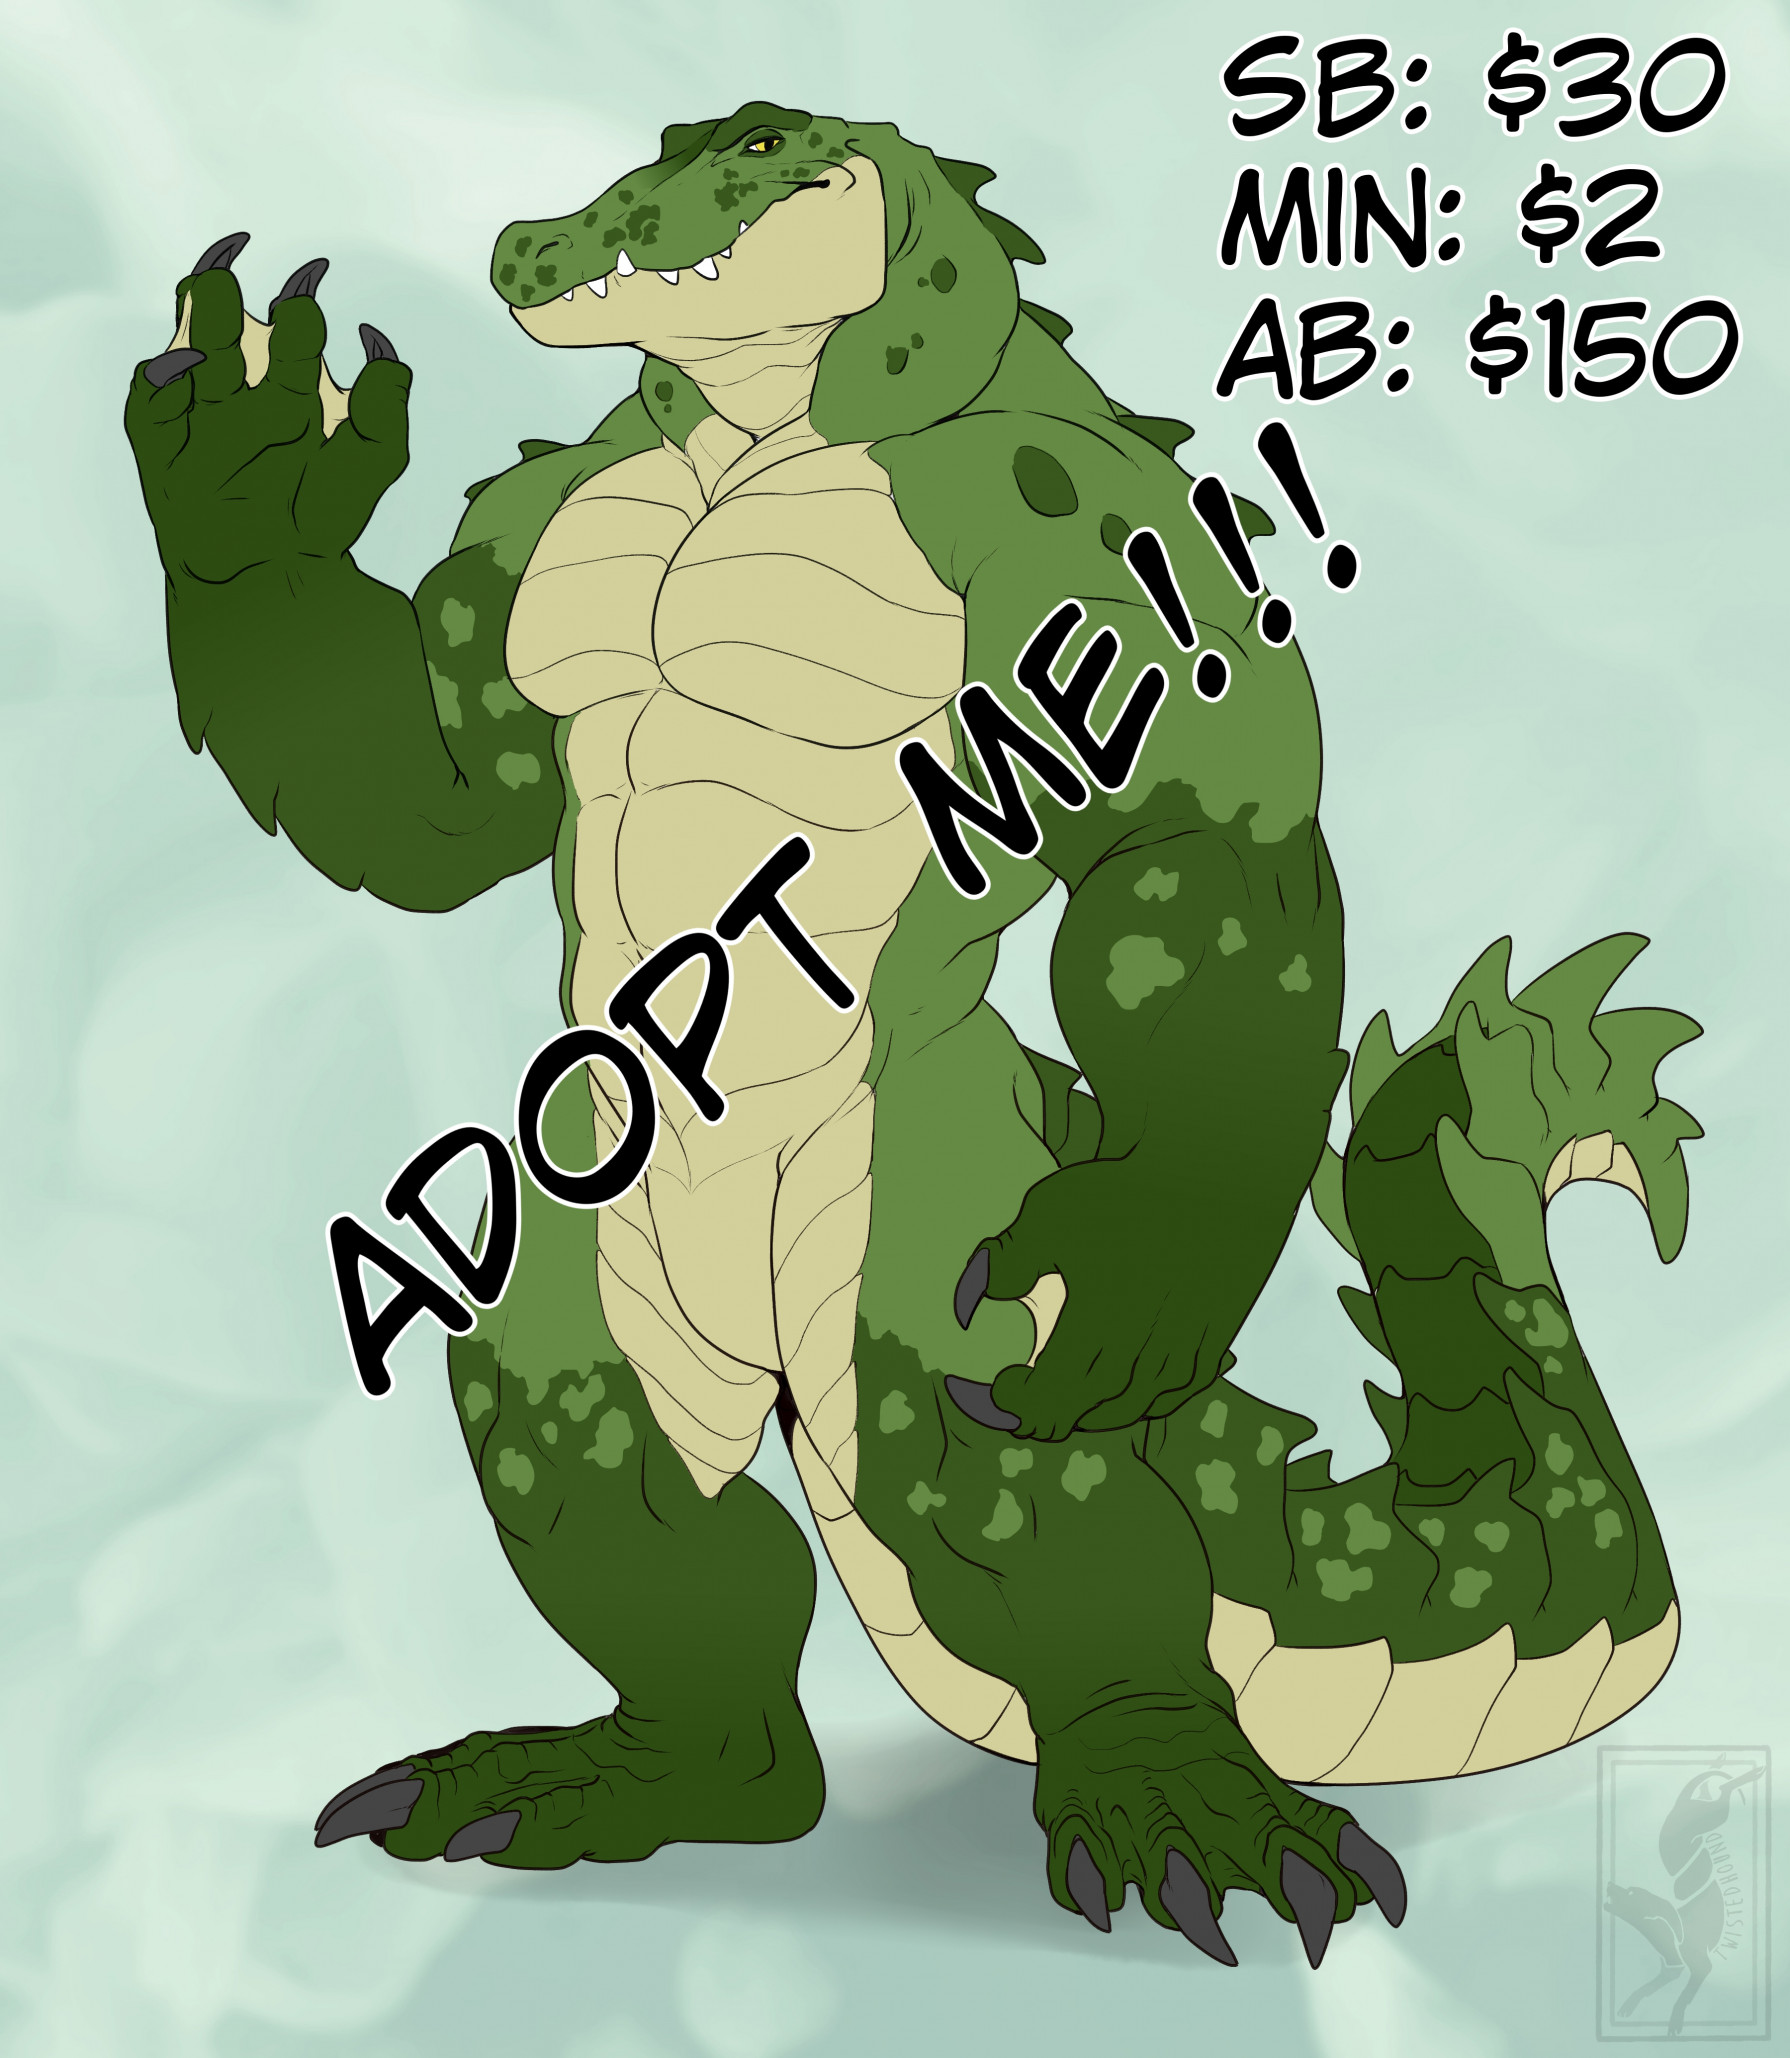 Crocodile, Adopt Me! Wiki